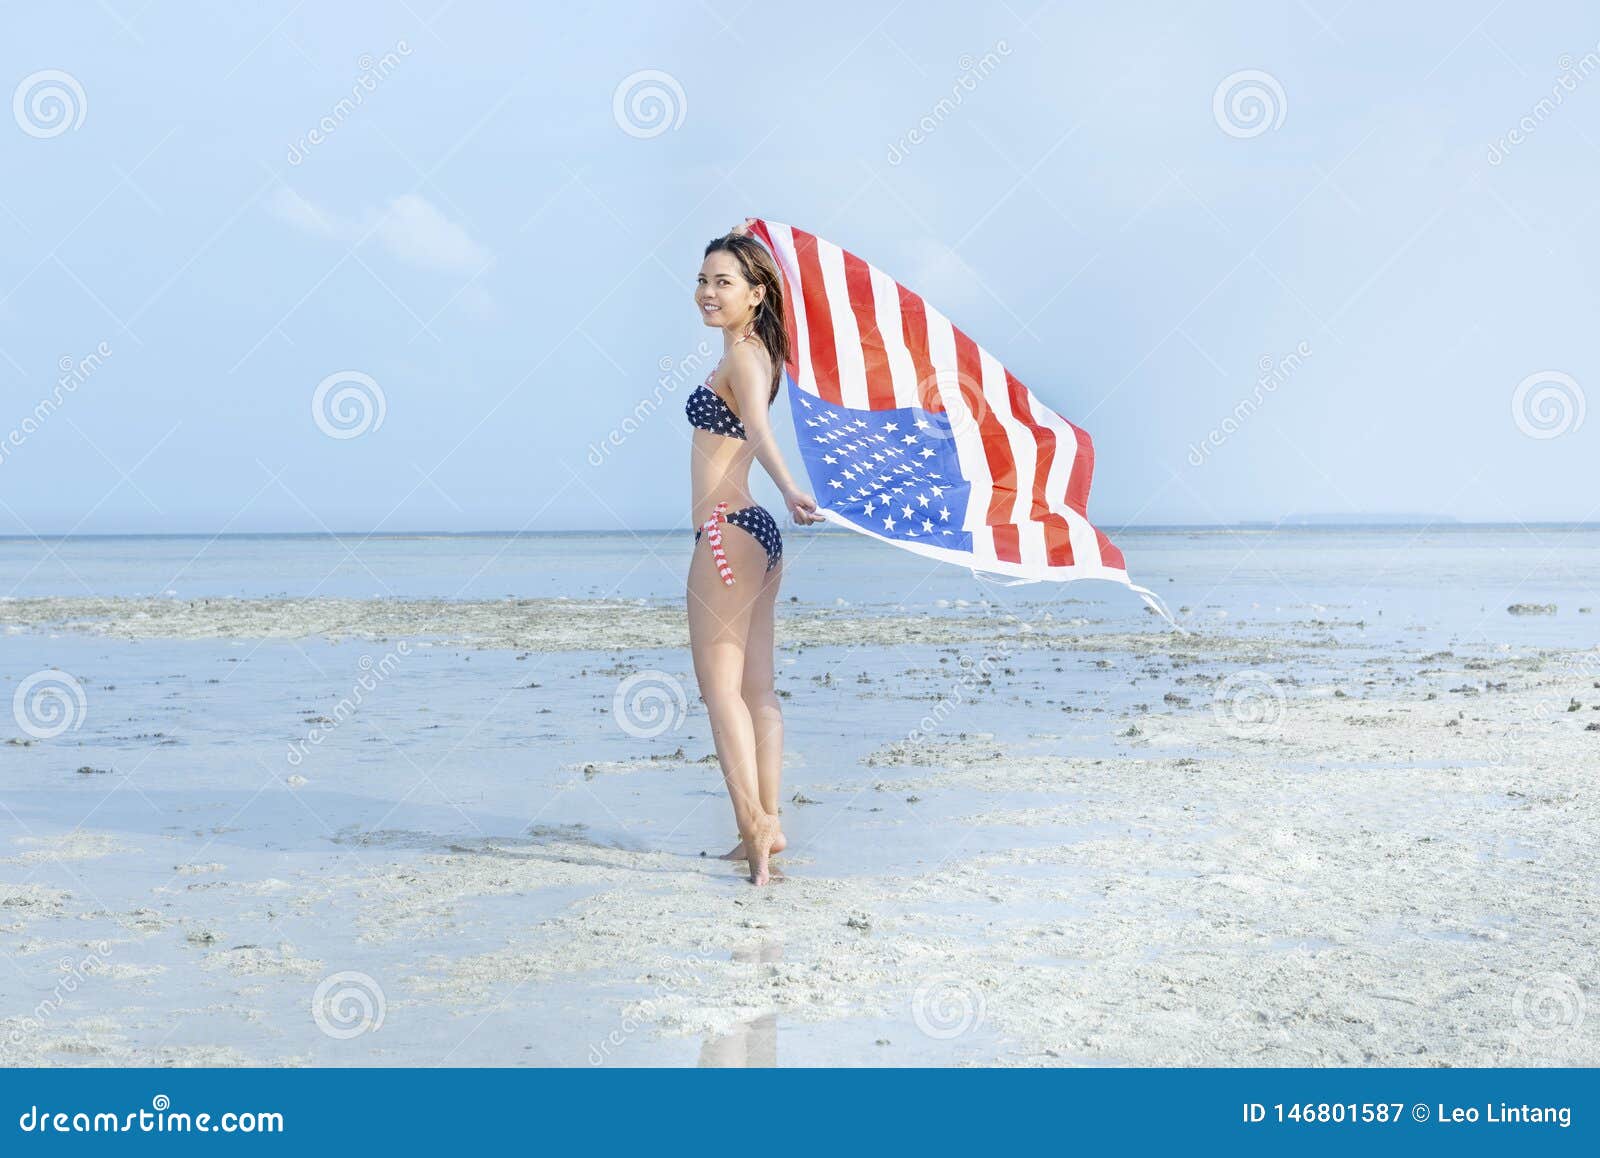 Asian Girl in Bikini of American Flag Holding a Waving American